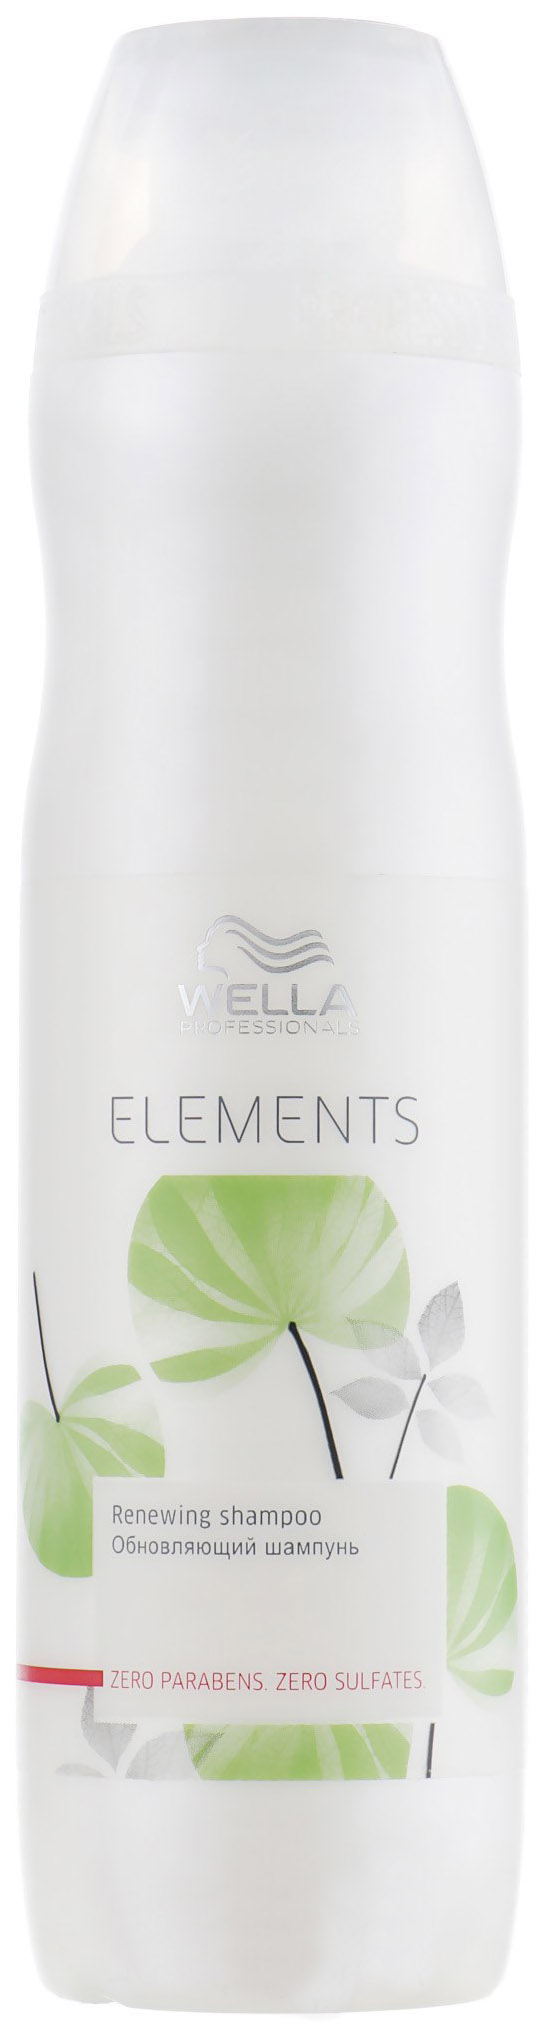 Купить Шампунь Wella Professionals Elements Renewing Shampoo 250 мл